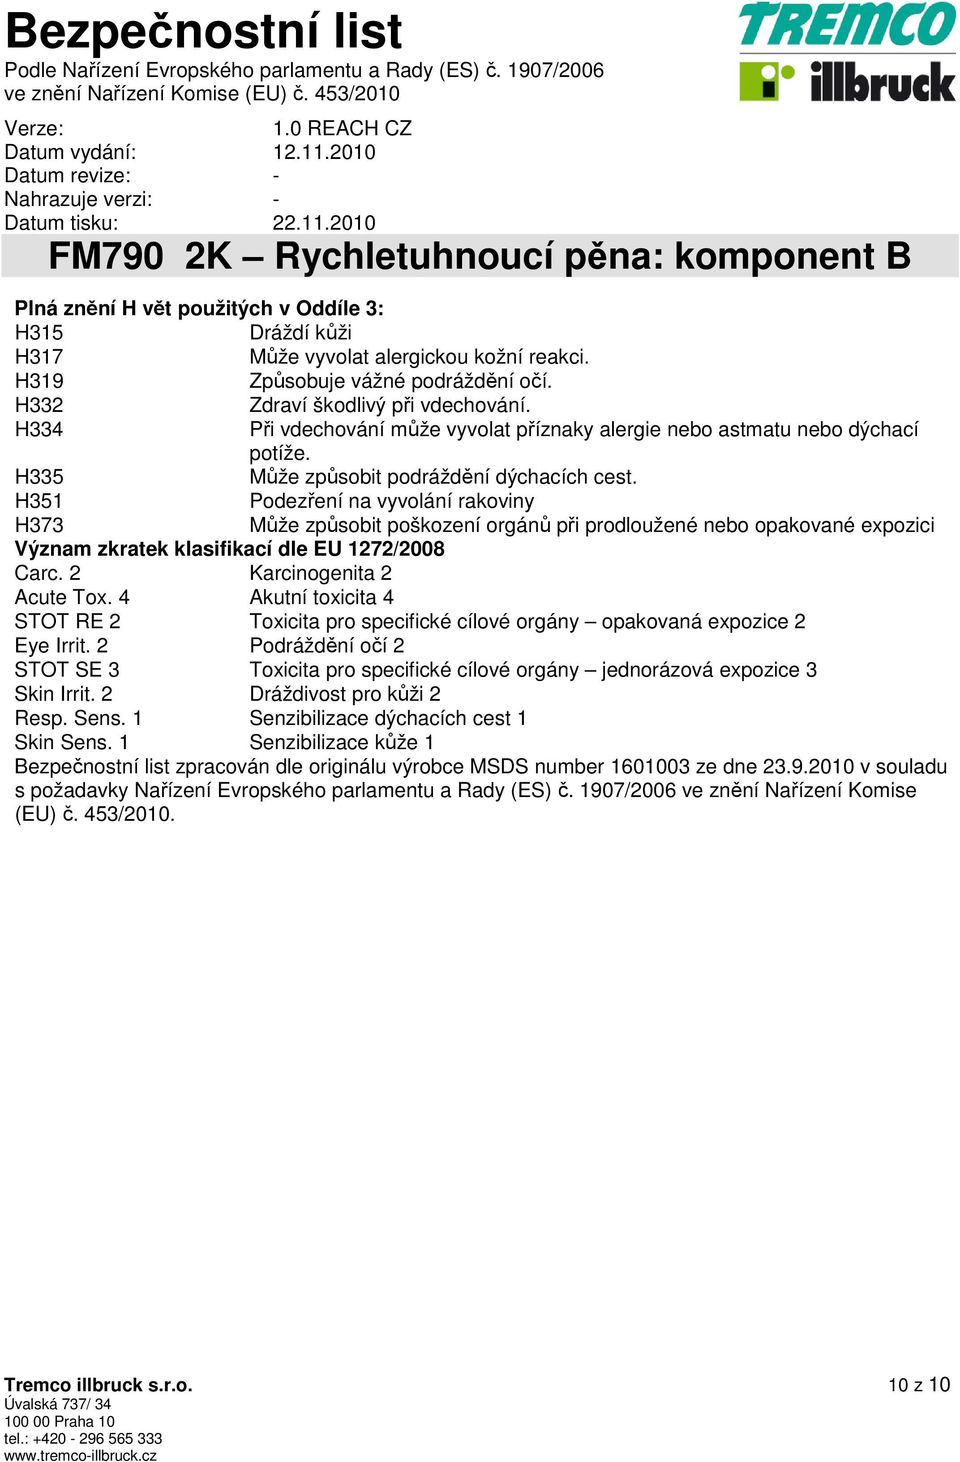 H351 Podezření na vyvolání rakoviny H373 Může způsobit poškození orgánů při prodloužené nebo opakované expozici Význam zkratek klasifikací dle EU 1272/2008 Carc. 2 Karcinogenita 2 Acute Tox.